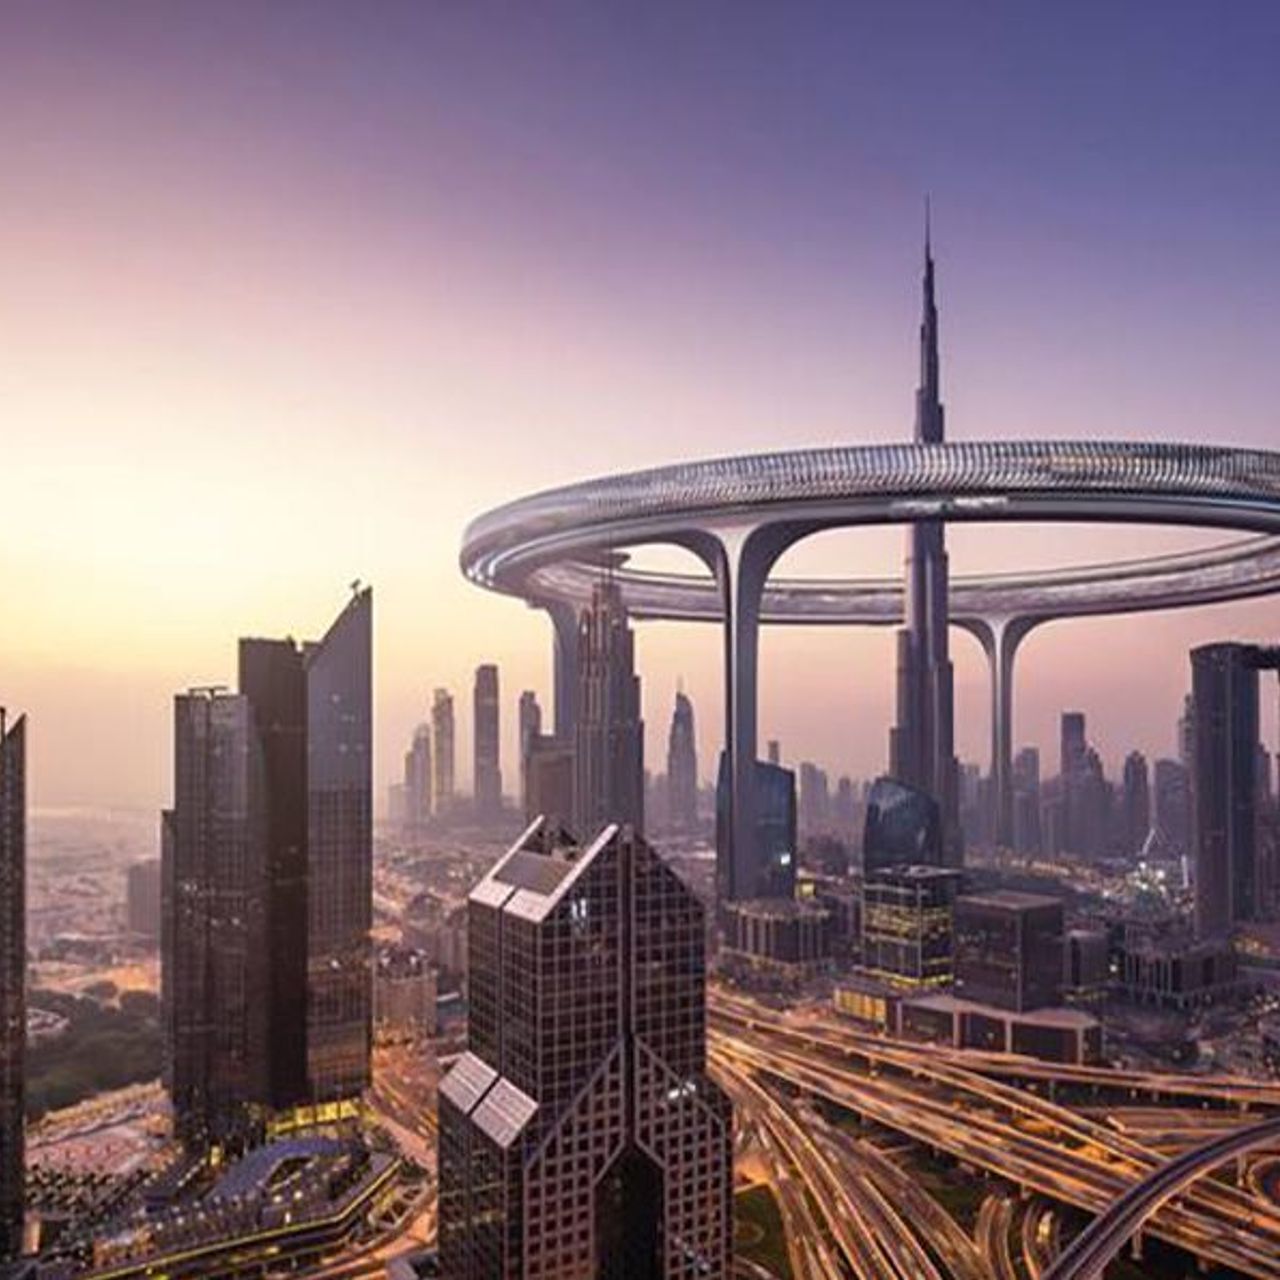 Downtown Circle Dubai ќе биде обрачна зграда долга 3 километри